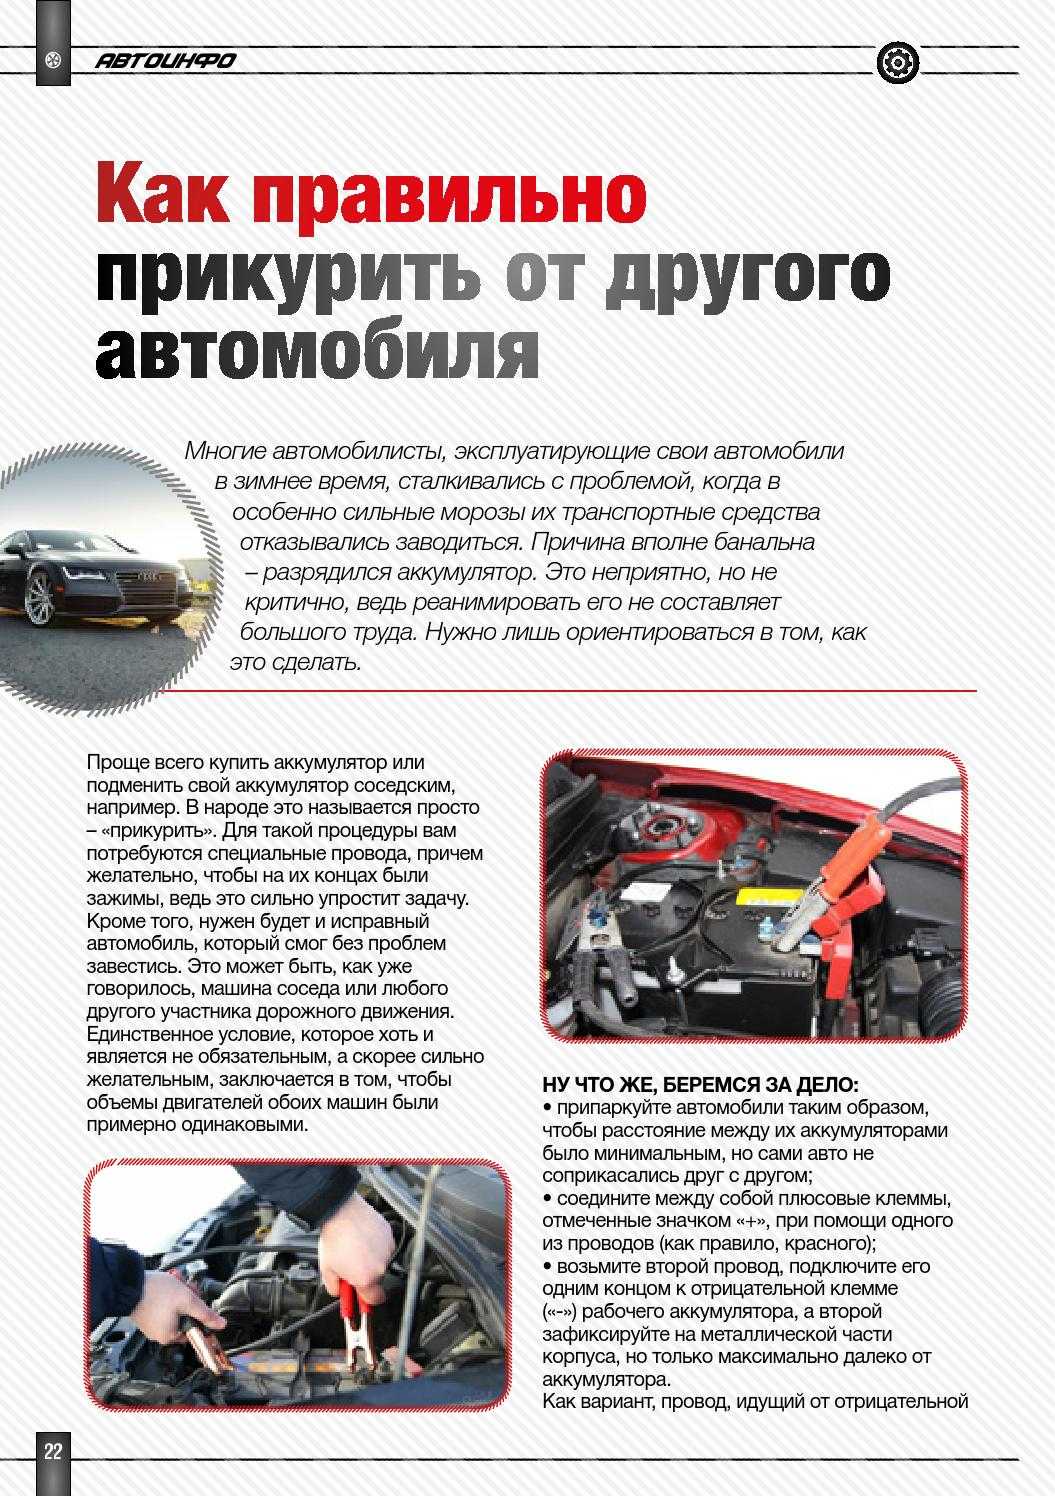 Как "прикурить" автомобиль правильно? :: syl.ru